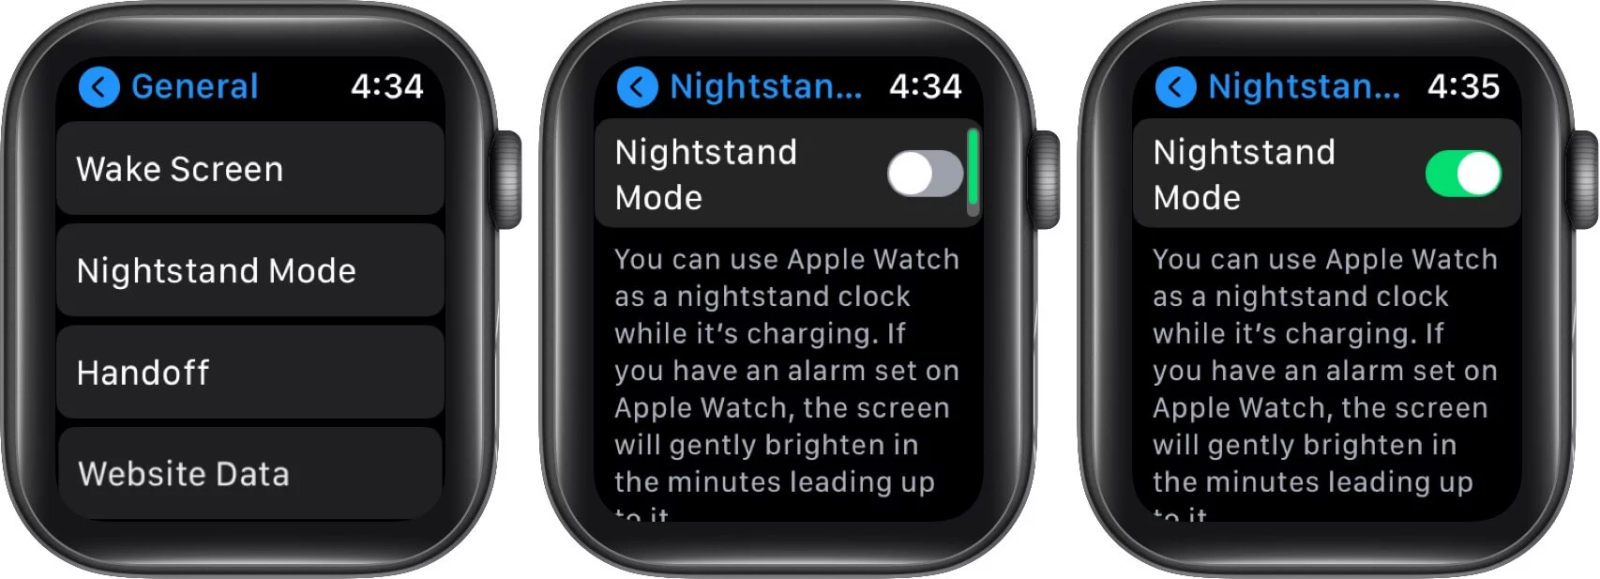 bật chế độ nightstand trên apple watch